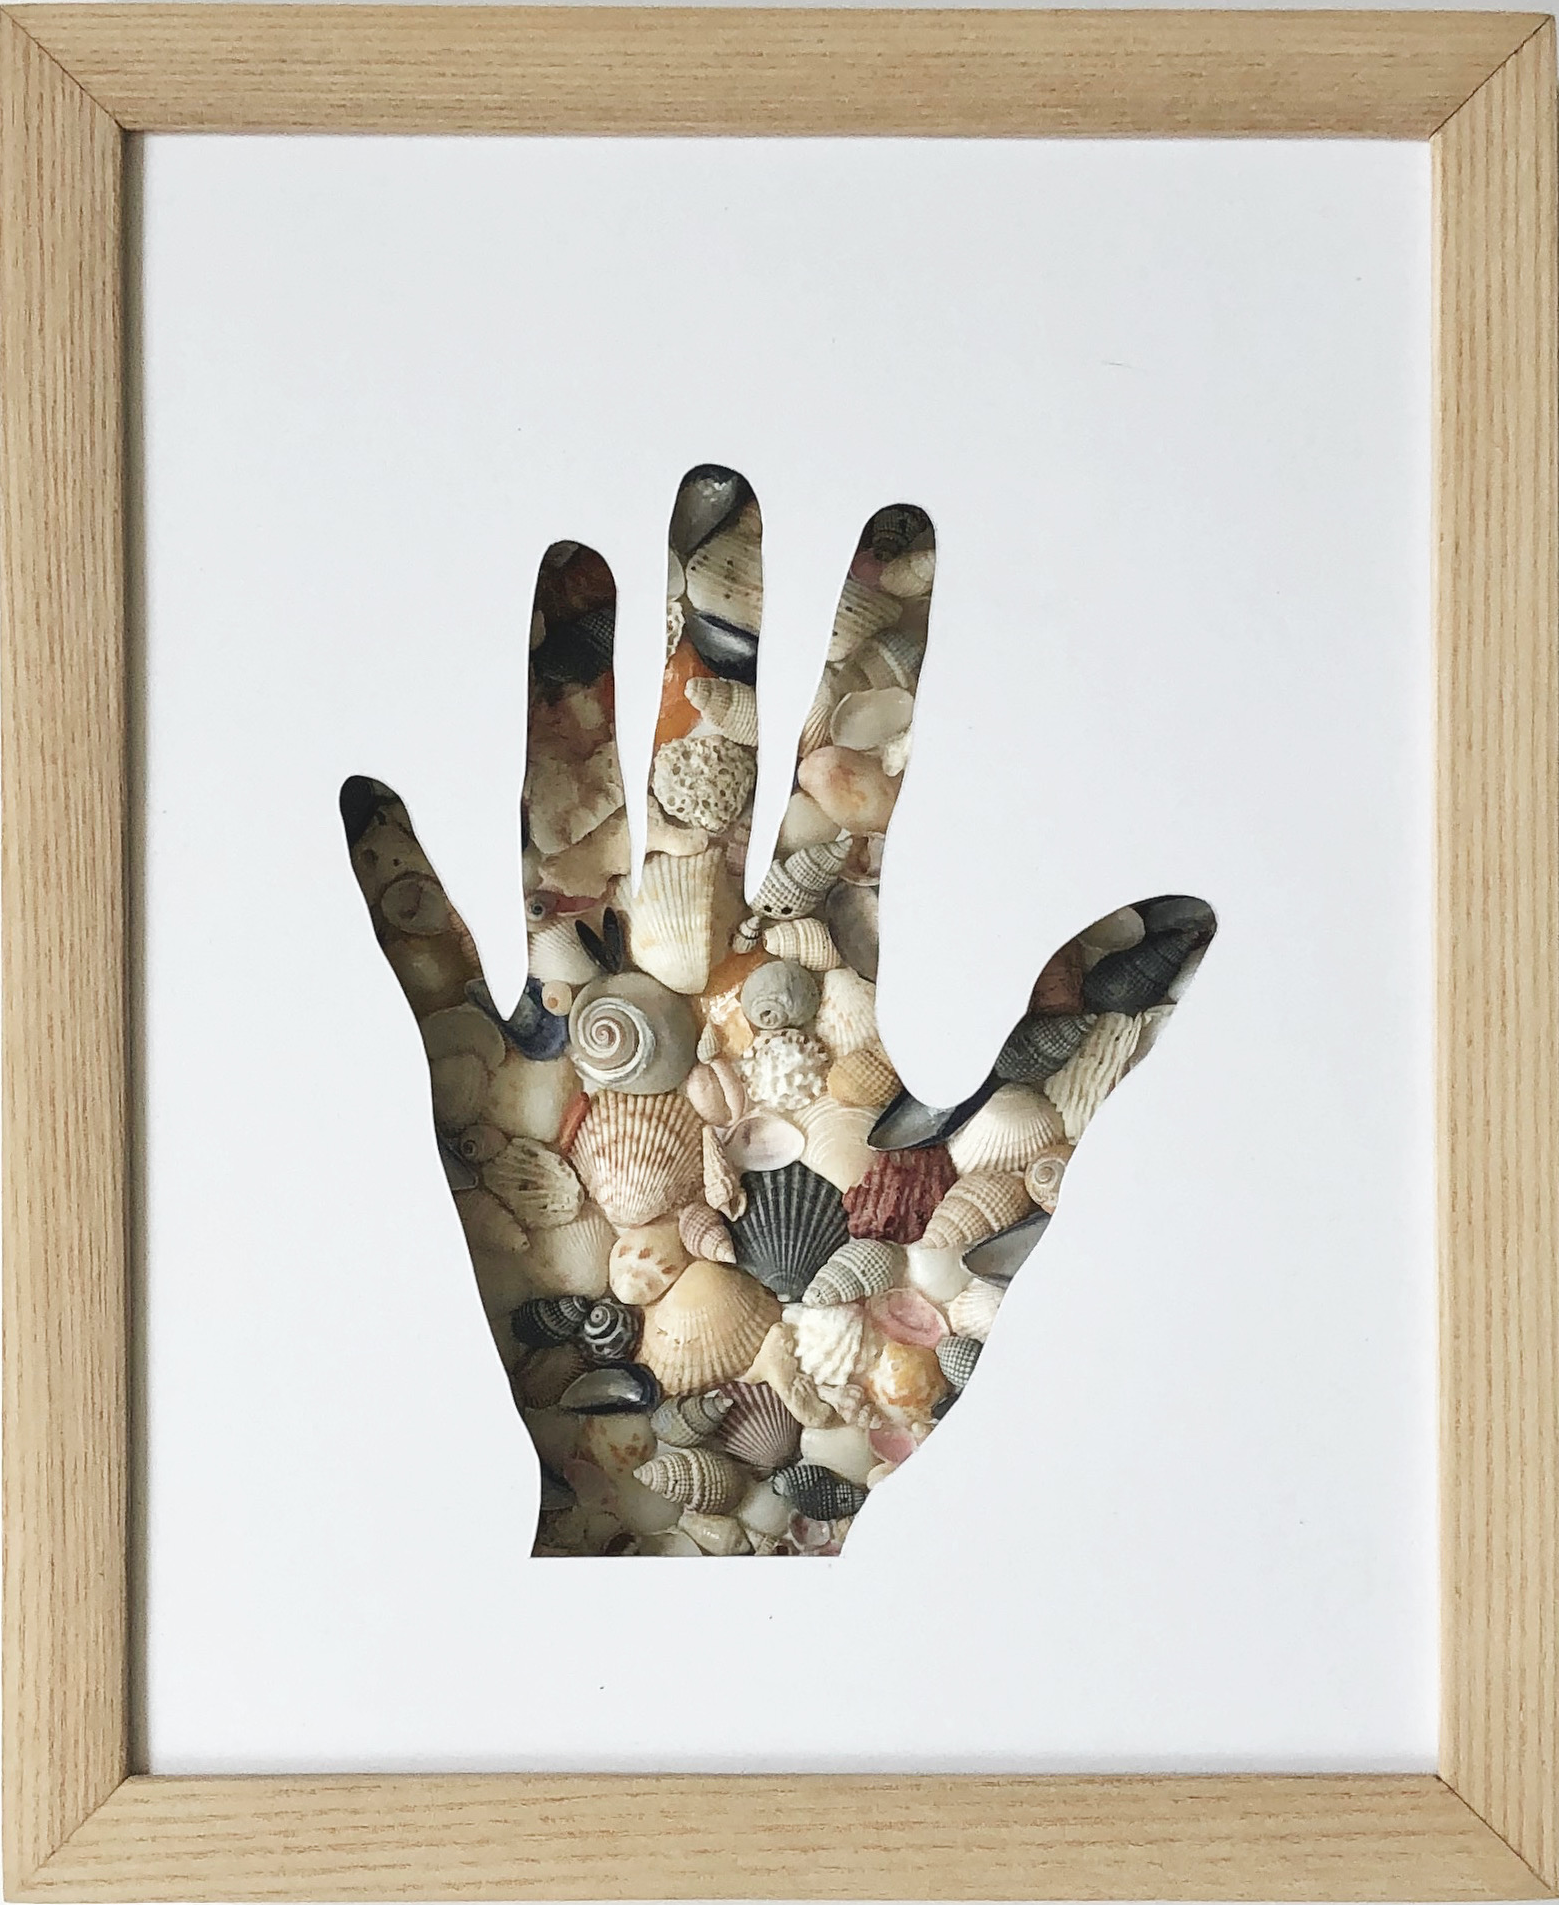   ego sum/I am (seashells)  paper, seashells 10 x 8 inches 